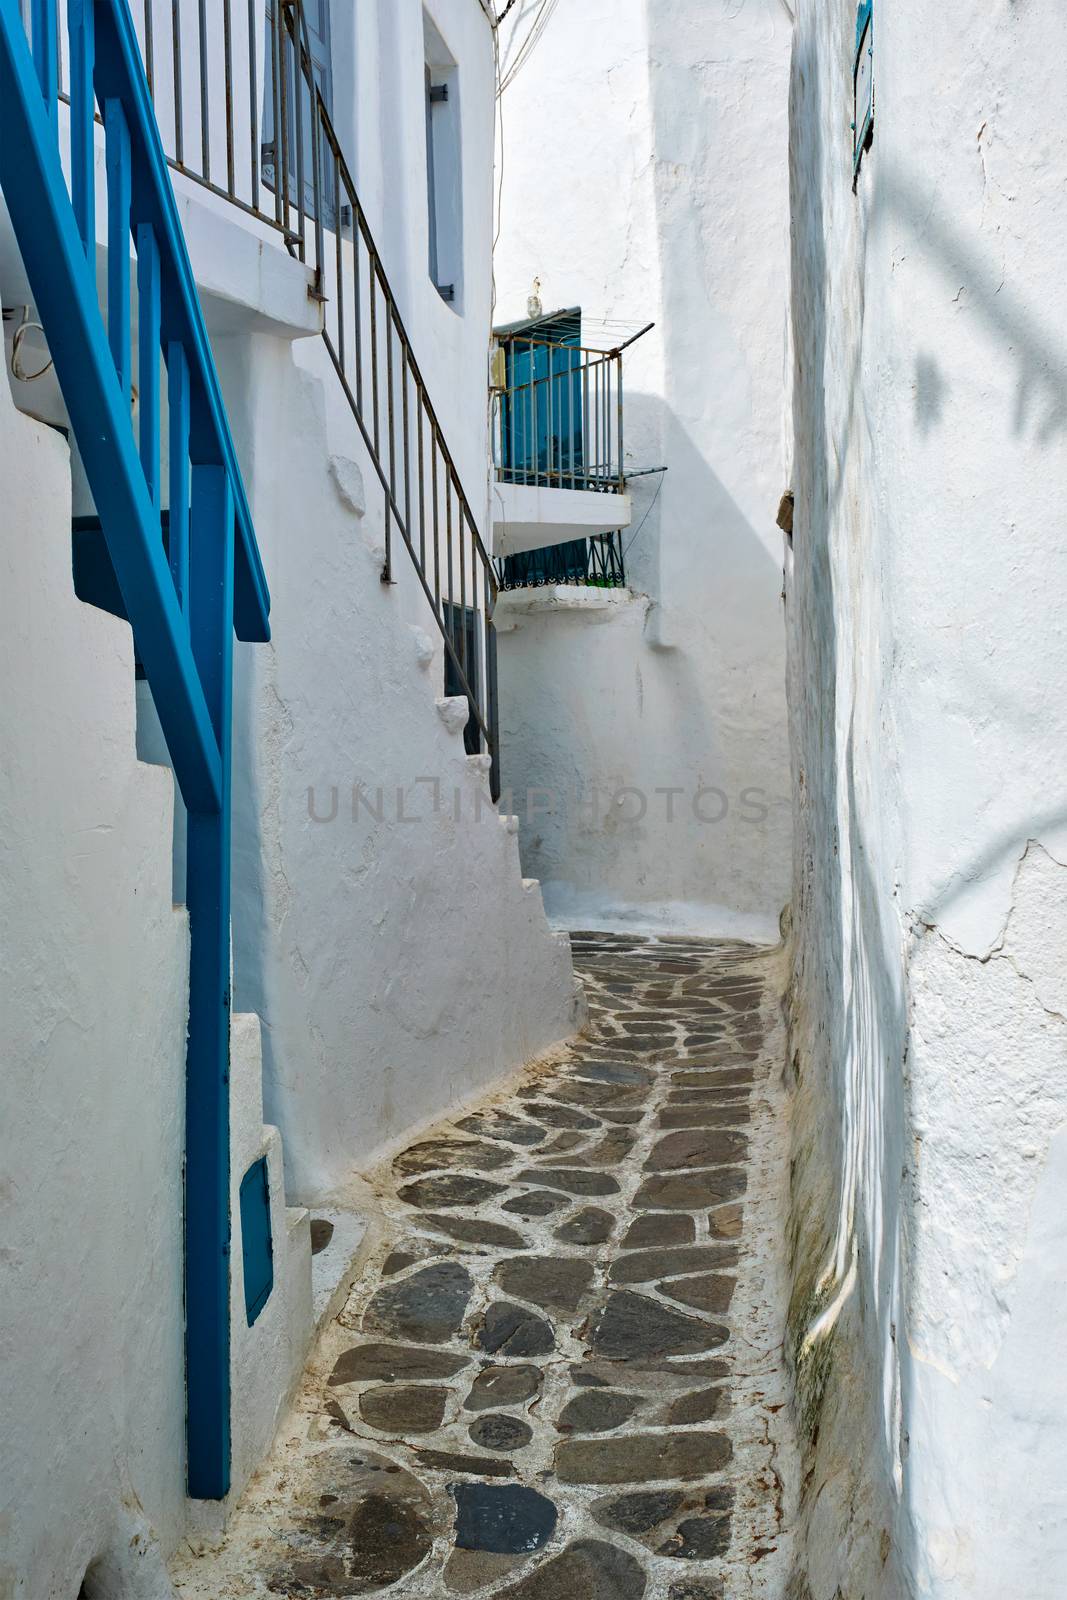 Greek Mykonos street on Mykonos island, Greece by dimol